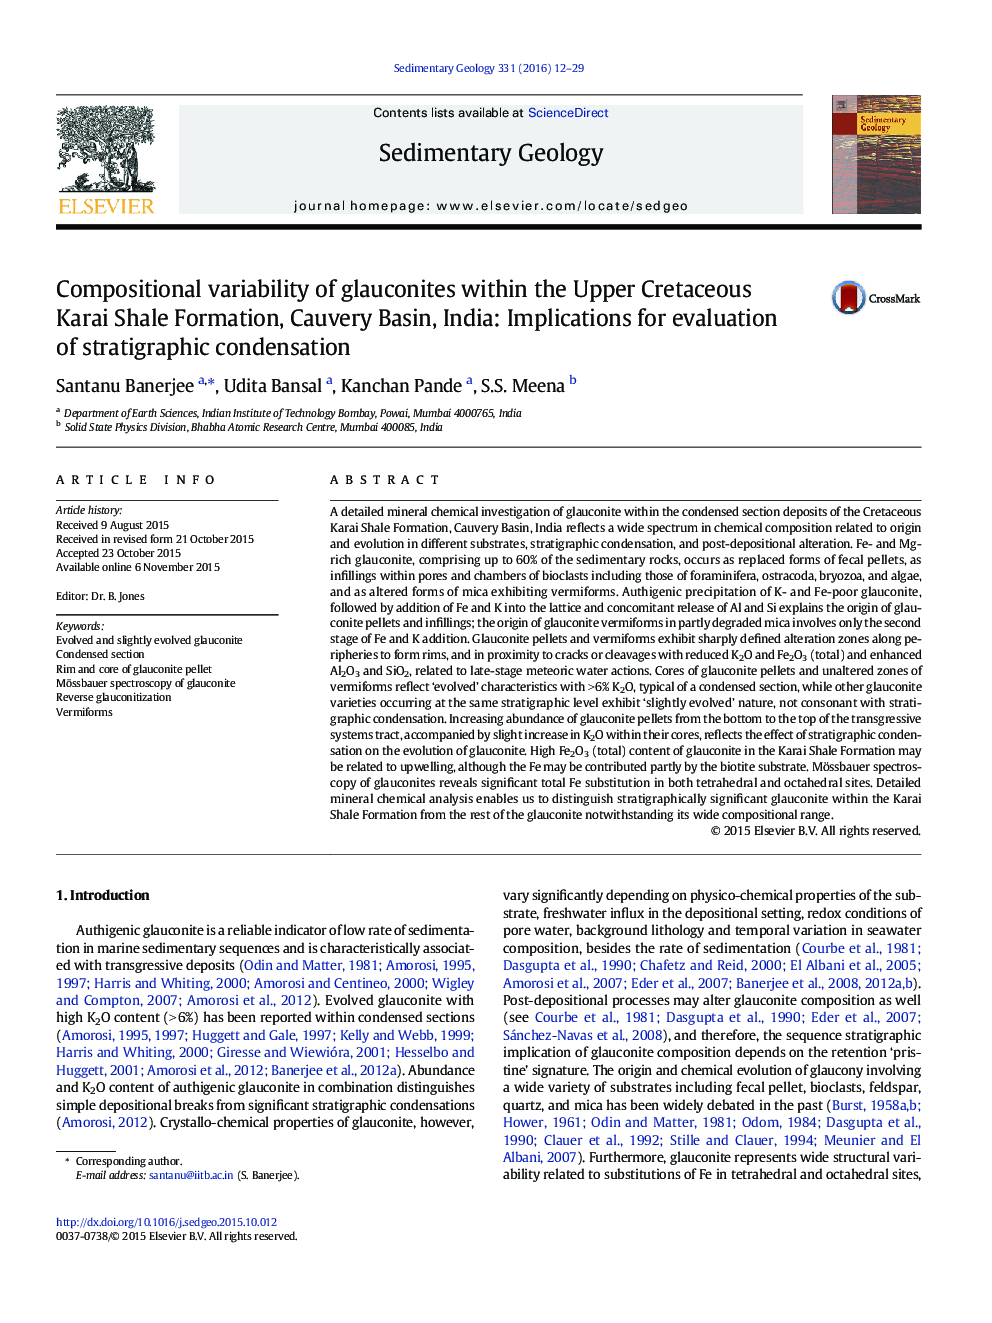 تنوع ترکیب گلوکونیت ها در سازند شیلر کراس در کراس، حوضه کوره، هند: پیامدهای ارزیابی تراکم کششی 